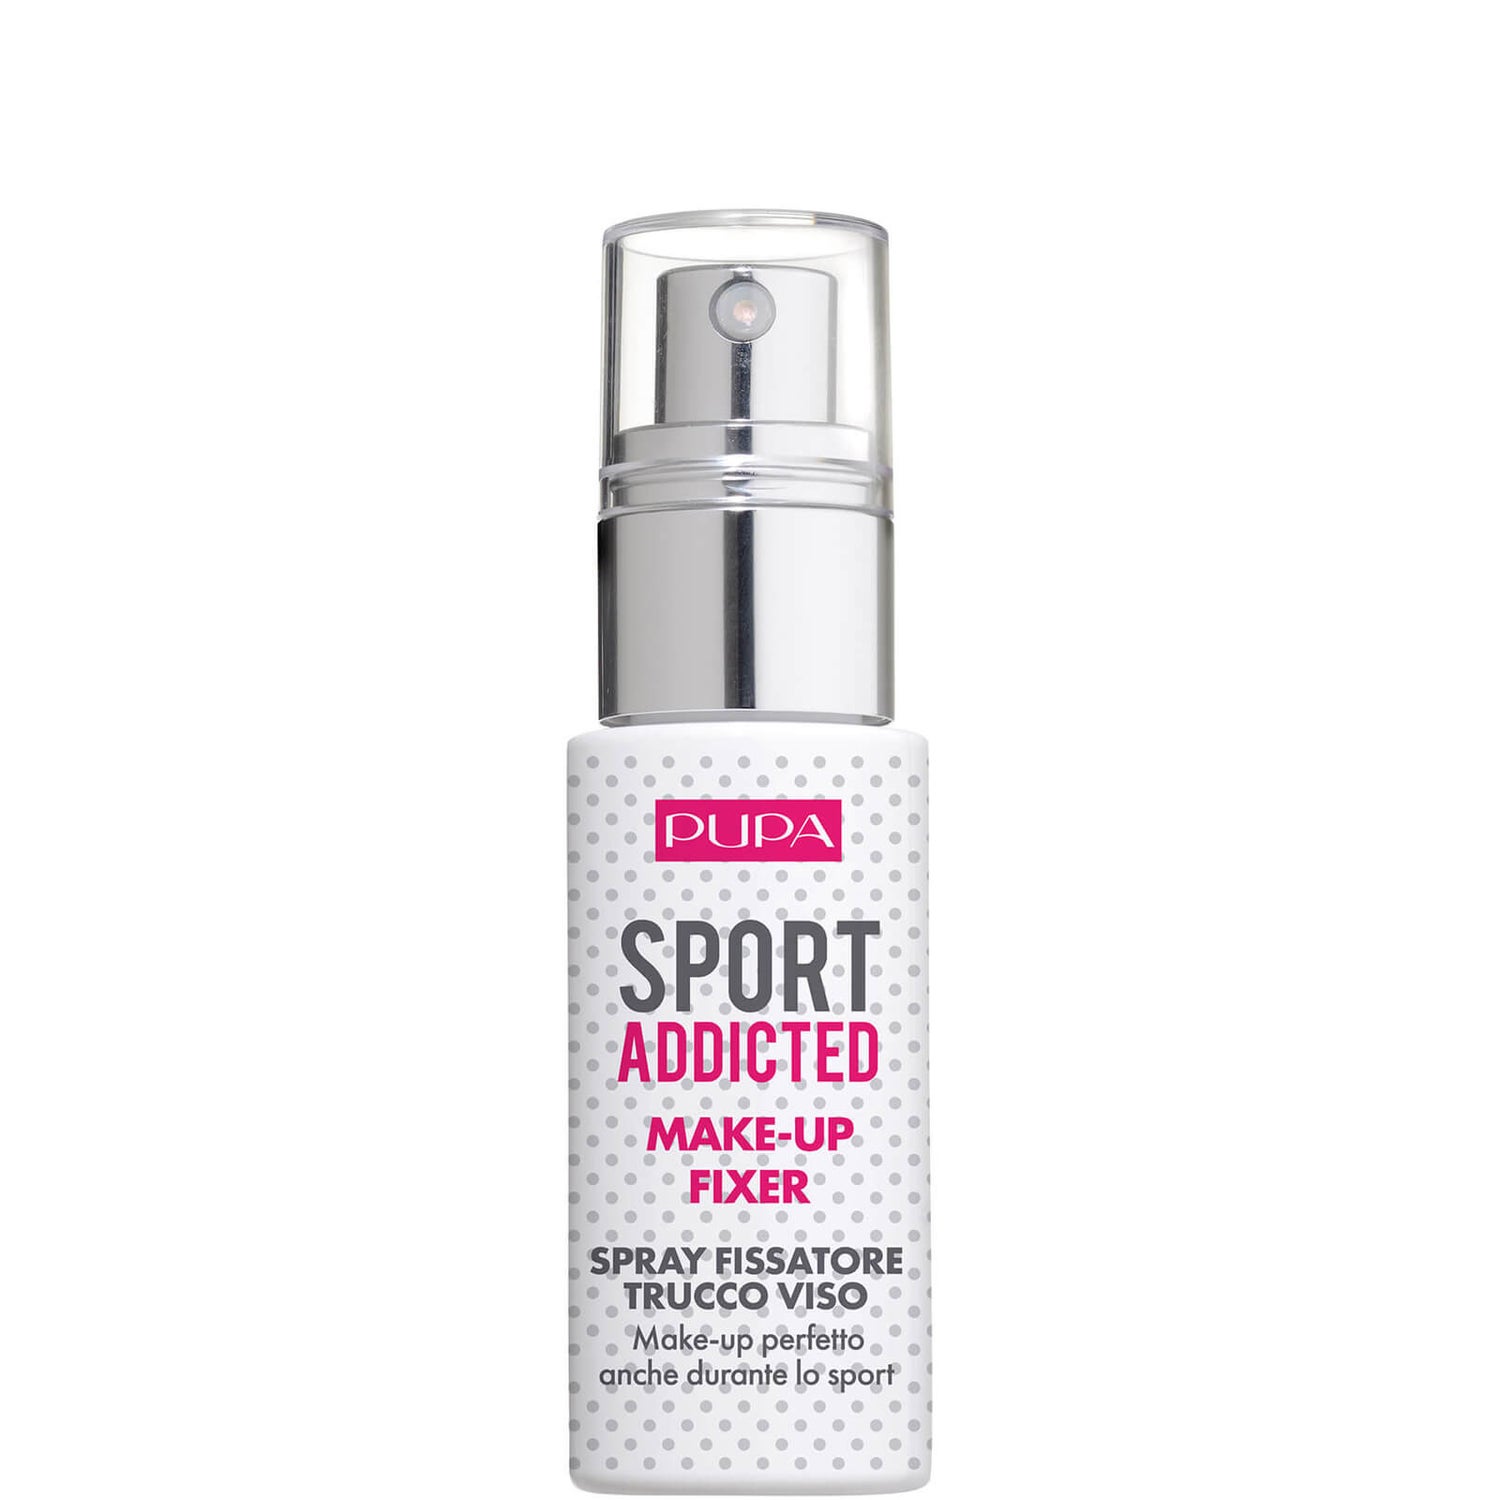 PUPA Sport Addicted spray fissatore trucco viso, make-up perfetto anche durante lo sporto 30 ml